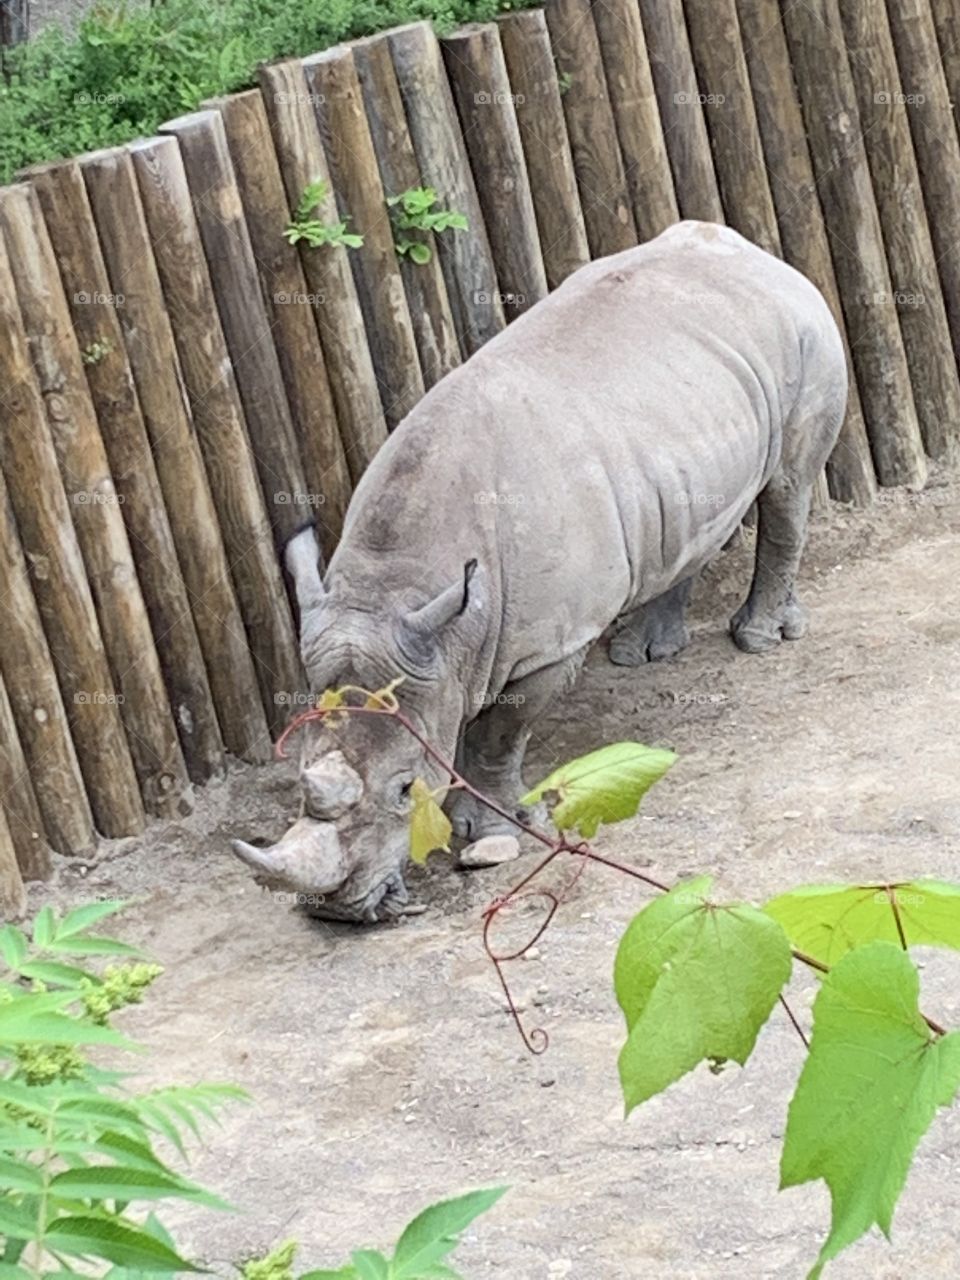 Rhinos 